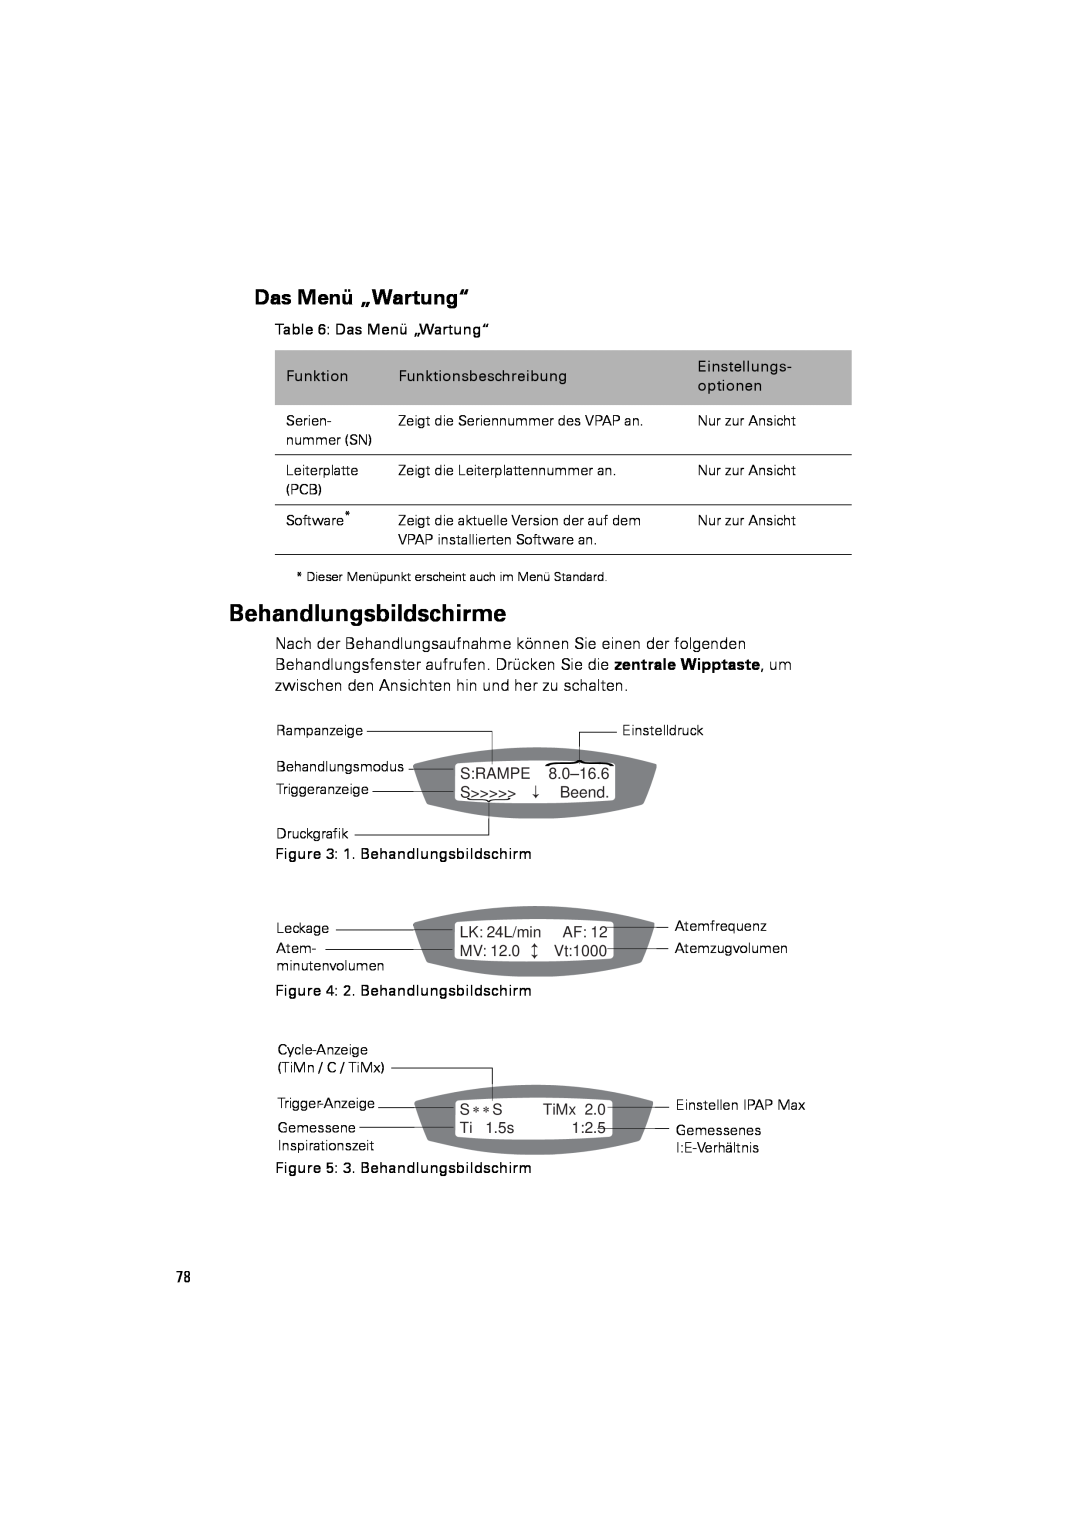 ResMed III & III ST user manual Behandlungsbildschirme, Das Menü „Wartung“ 